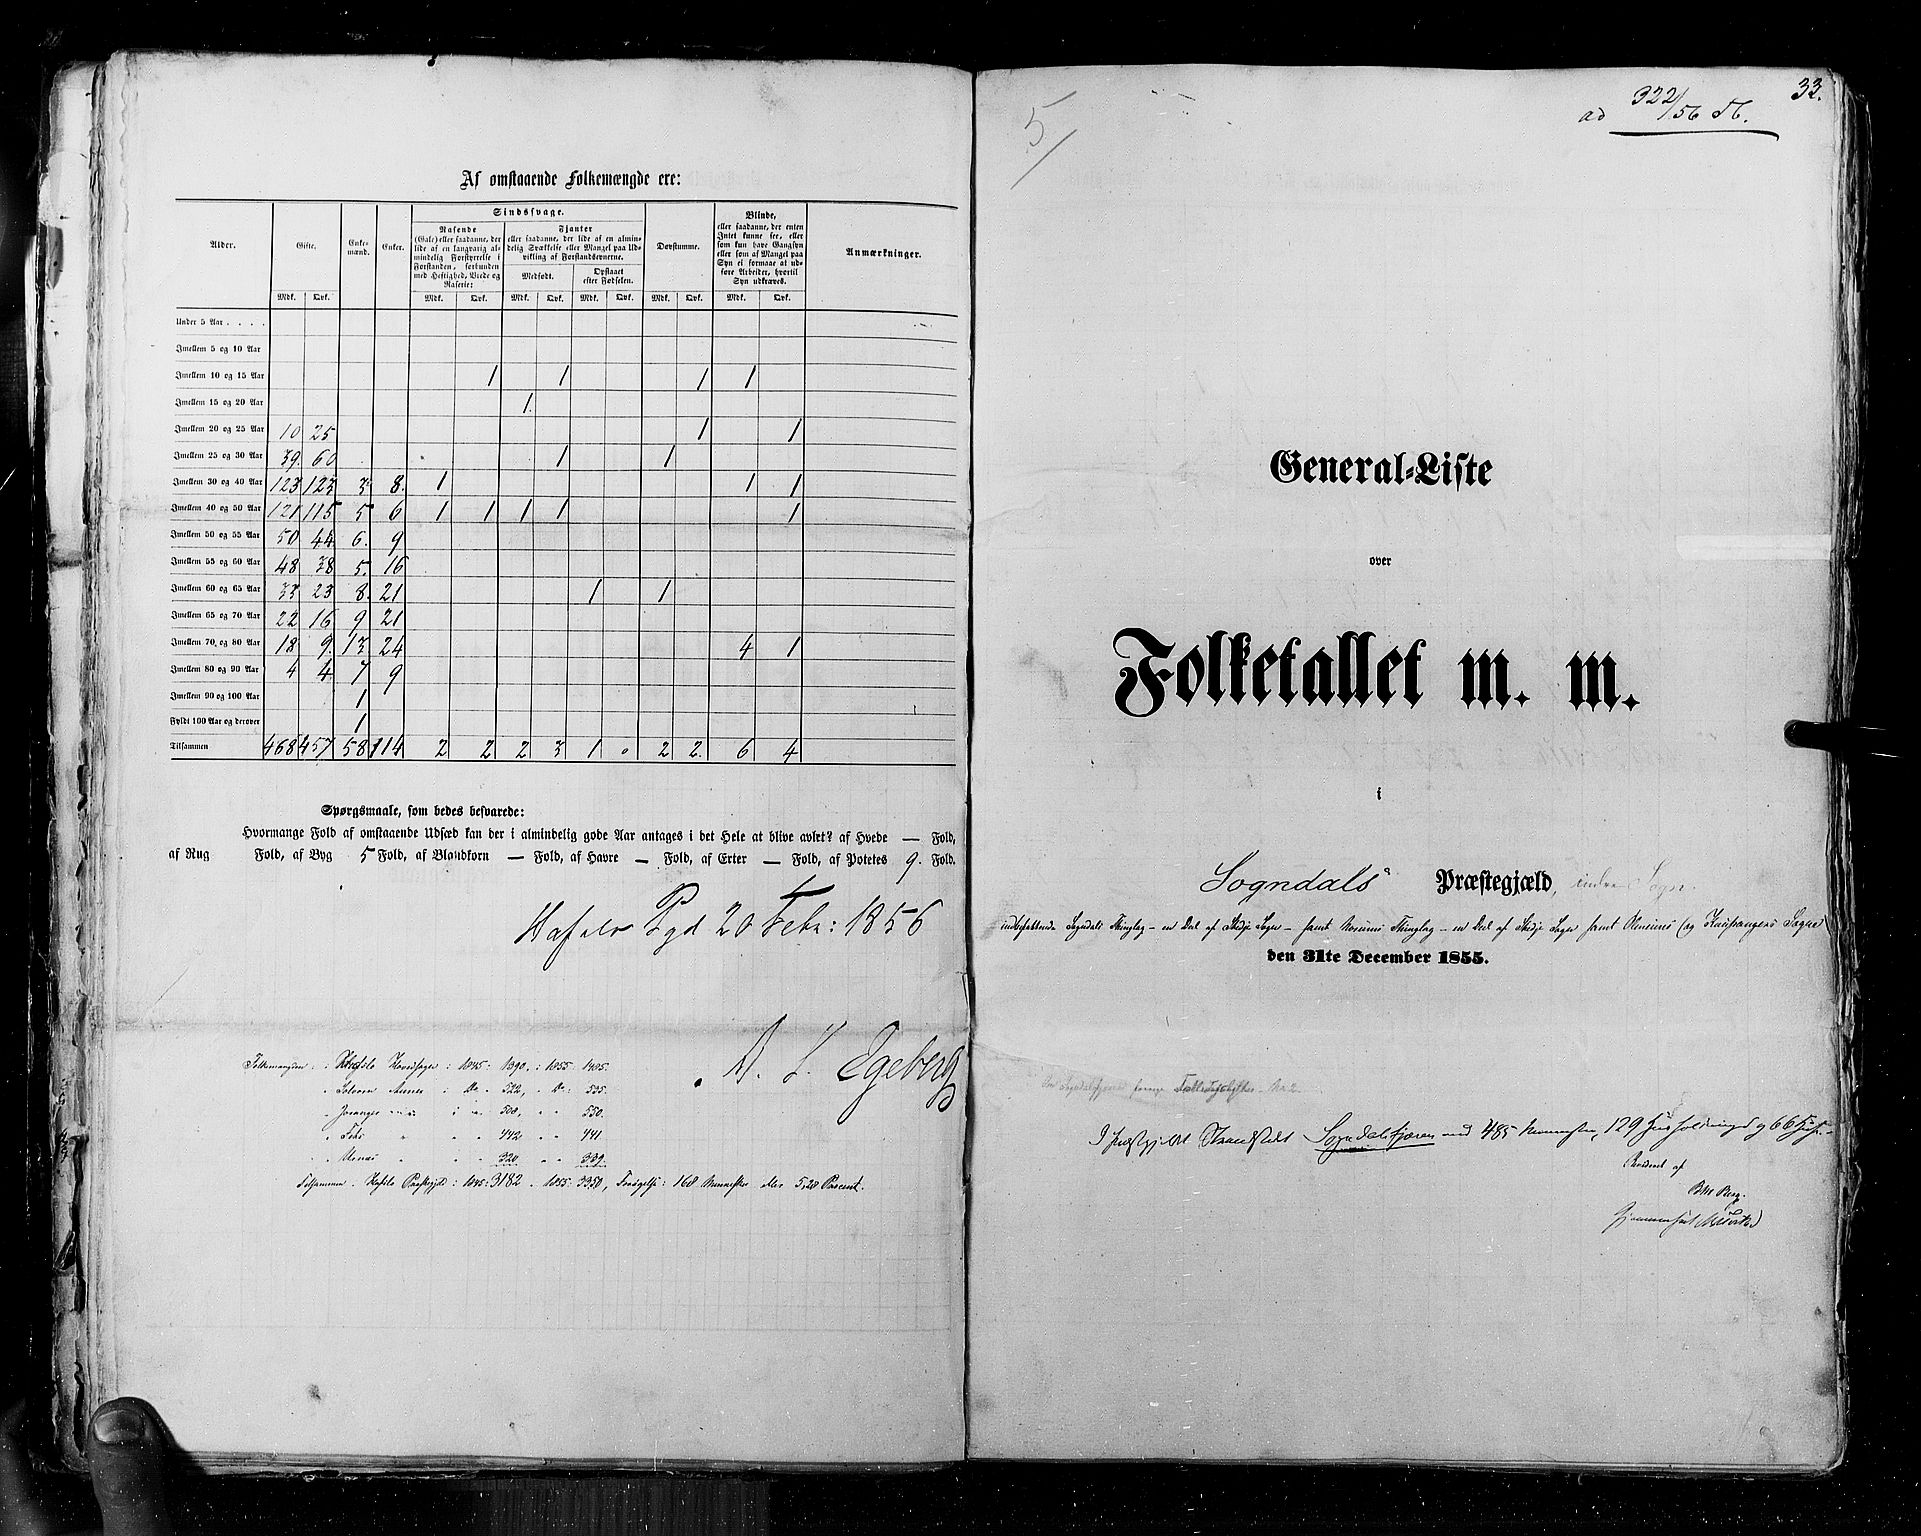 RA, Census 1855, vol. 5: Nordre Bergenhus amt, Romsdal amt og Søndre Trondhjem amt, 1855, p. 33